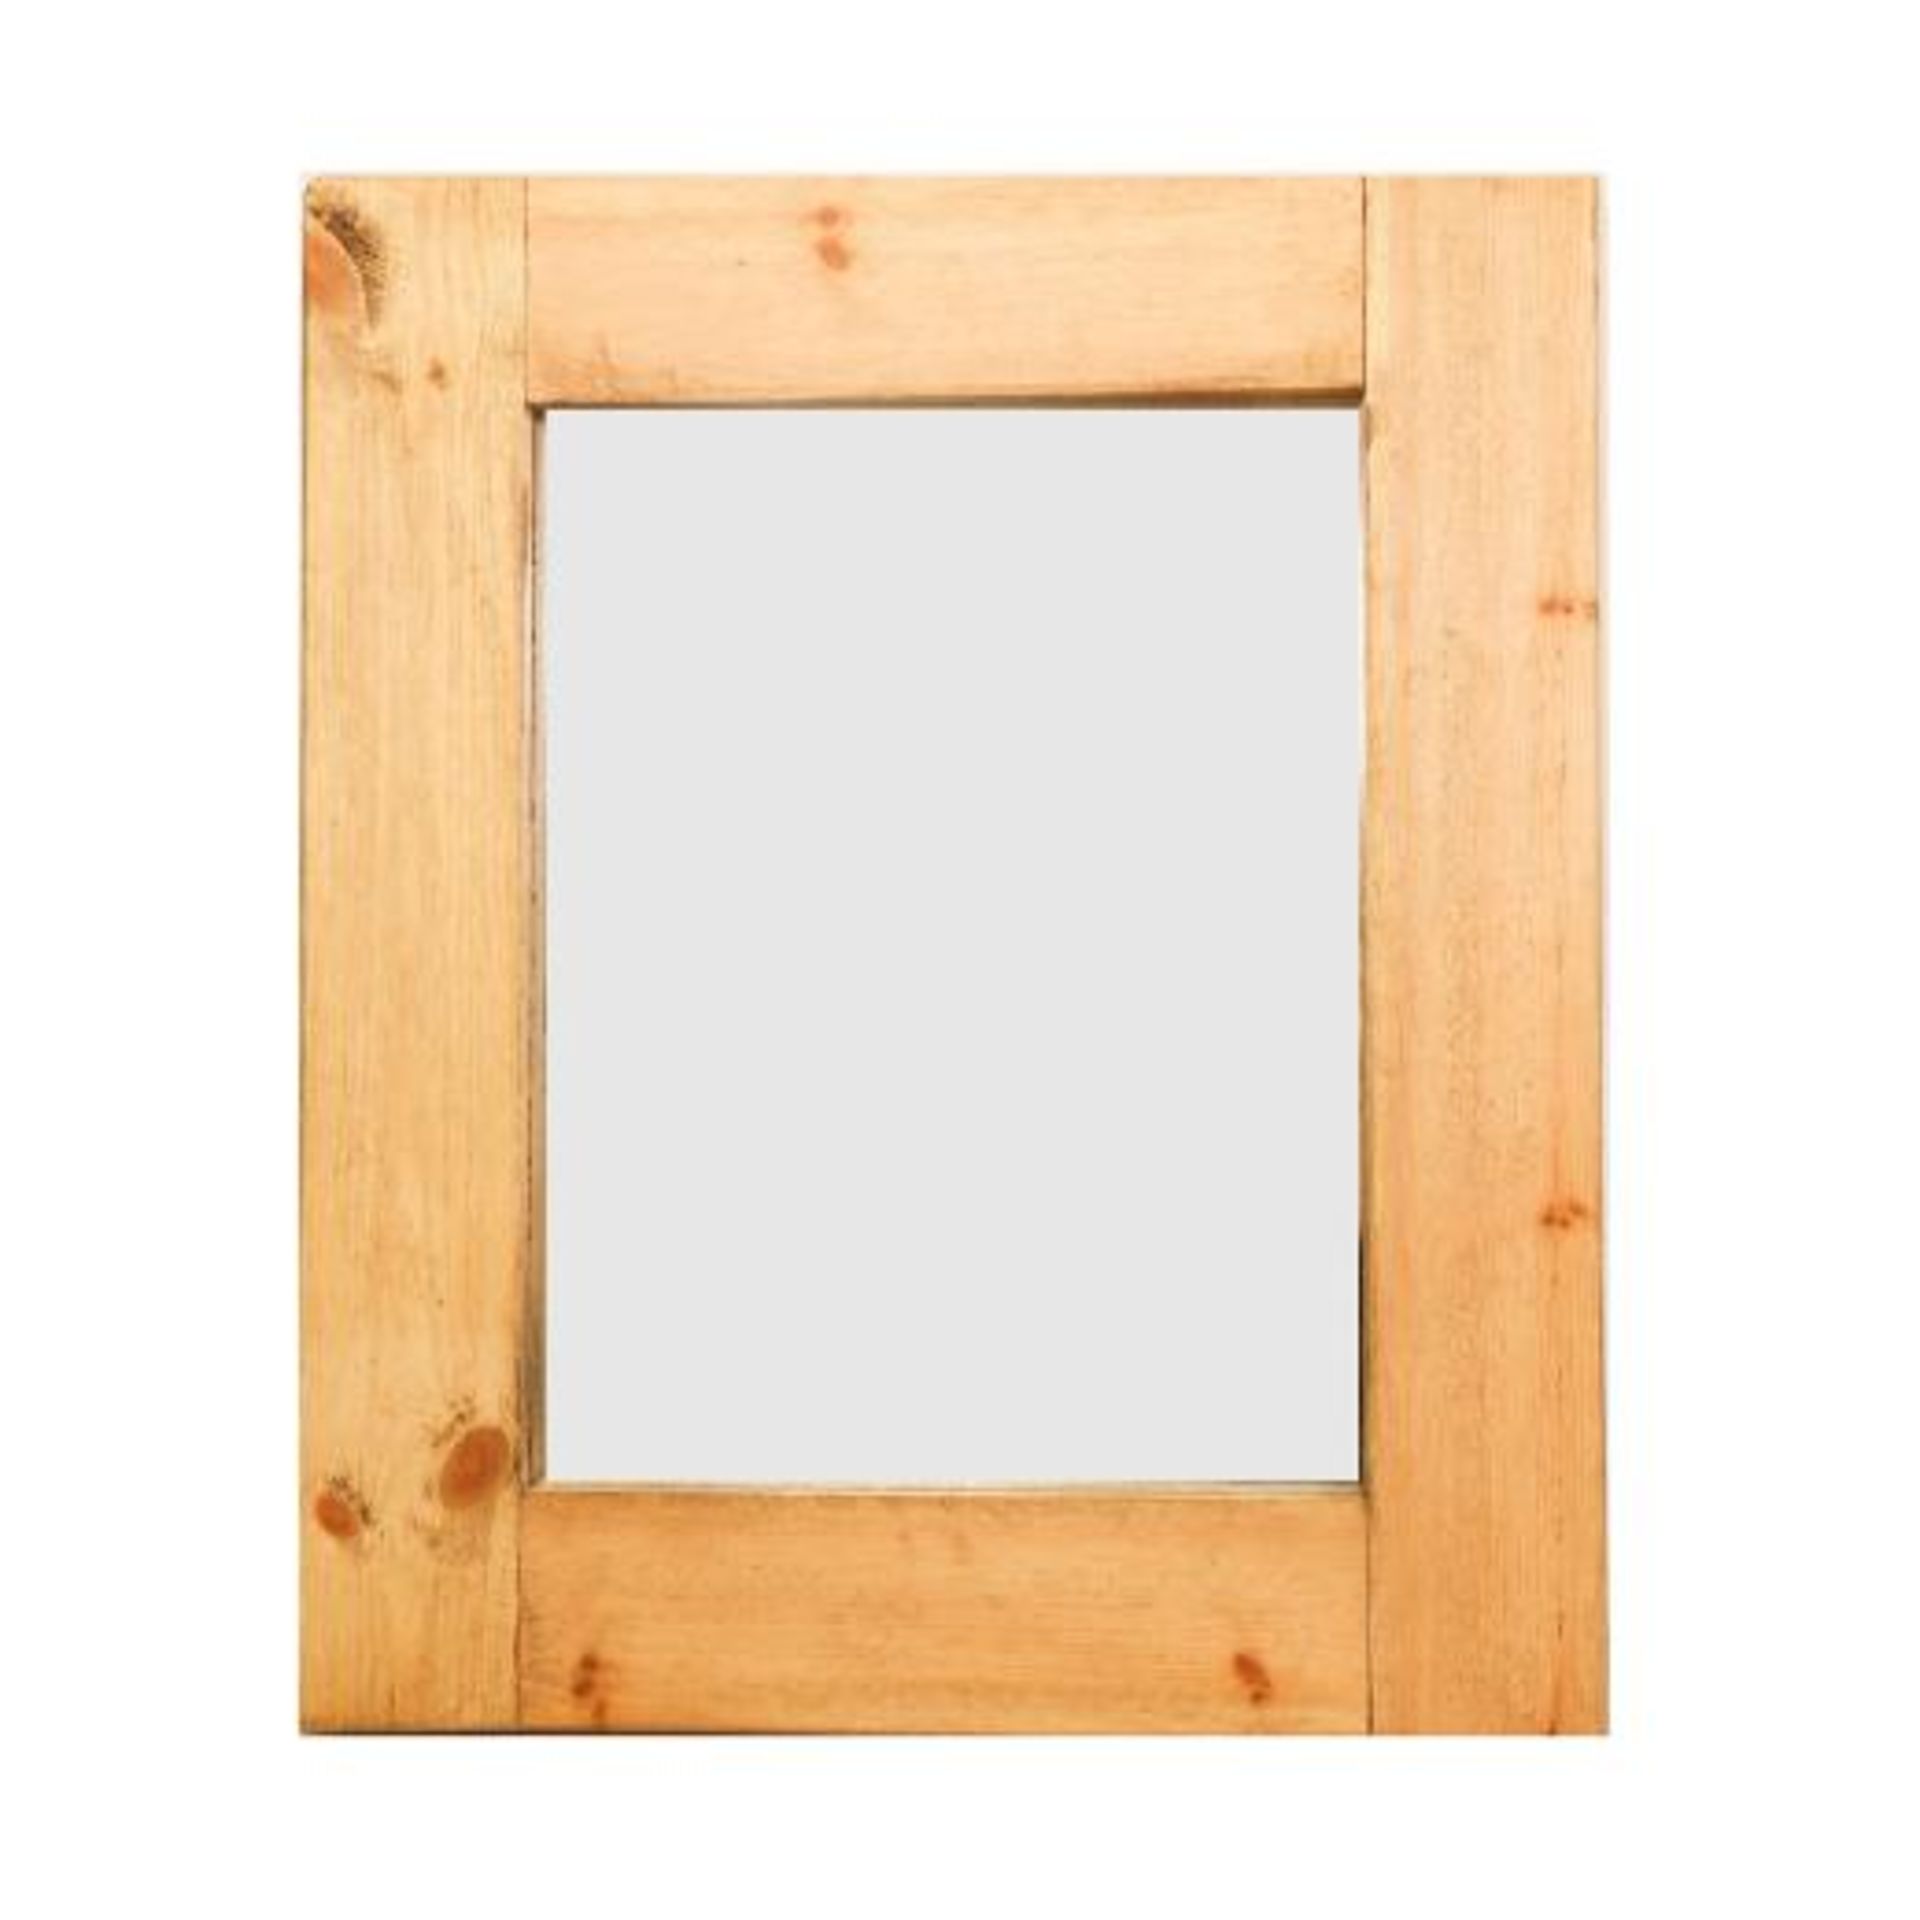 Marbello Square Mirror 135 x 135cm-Rustic Wood